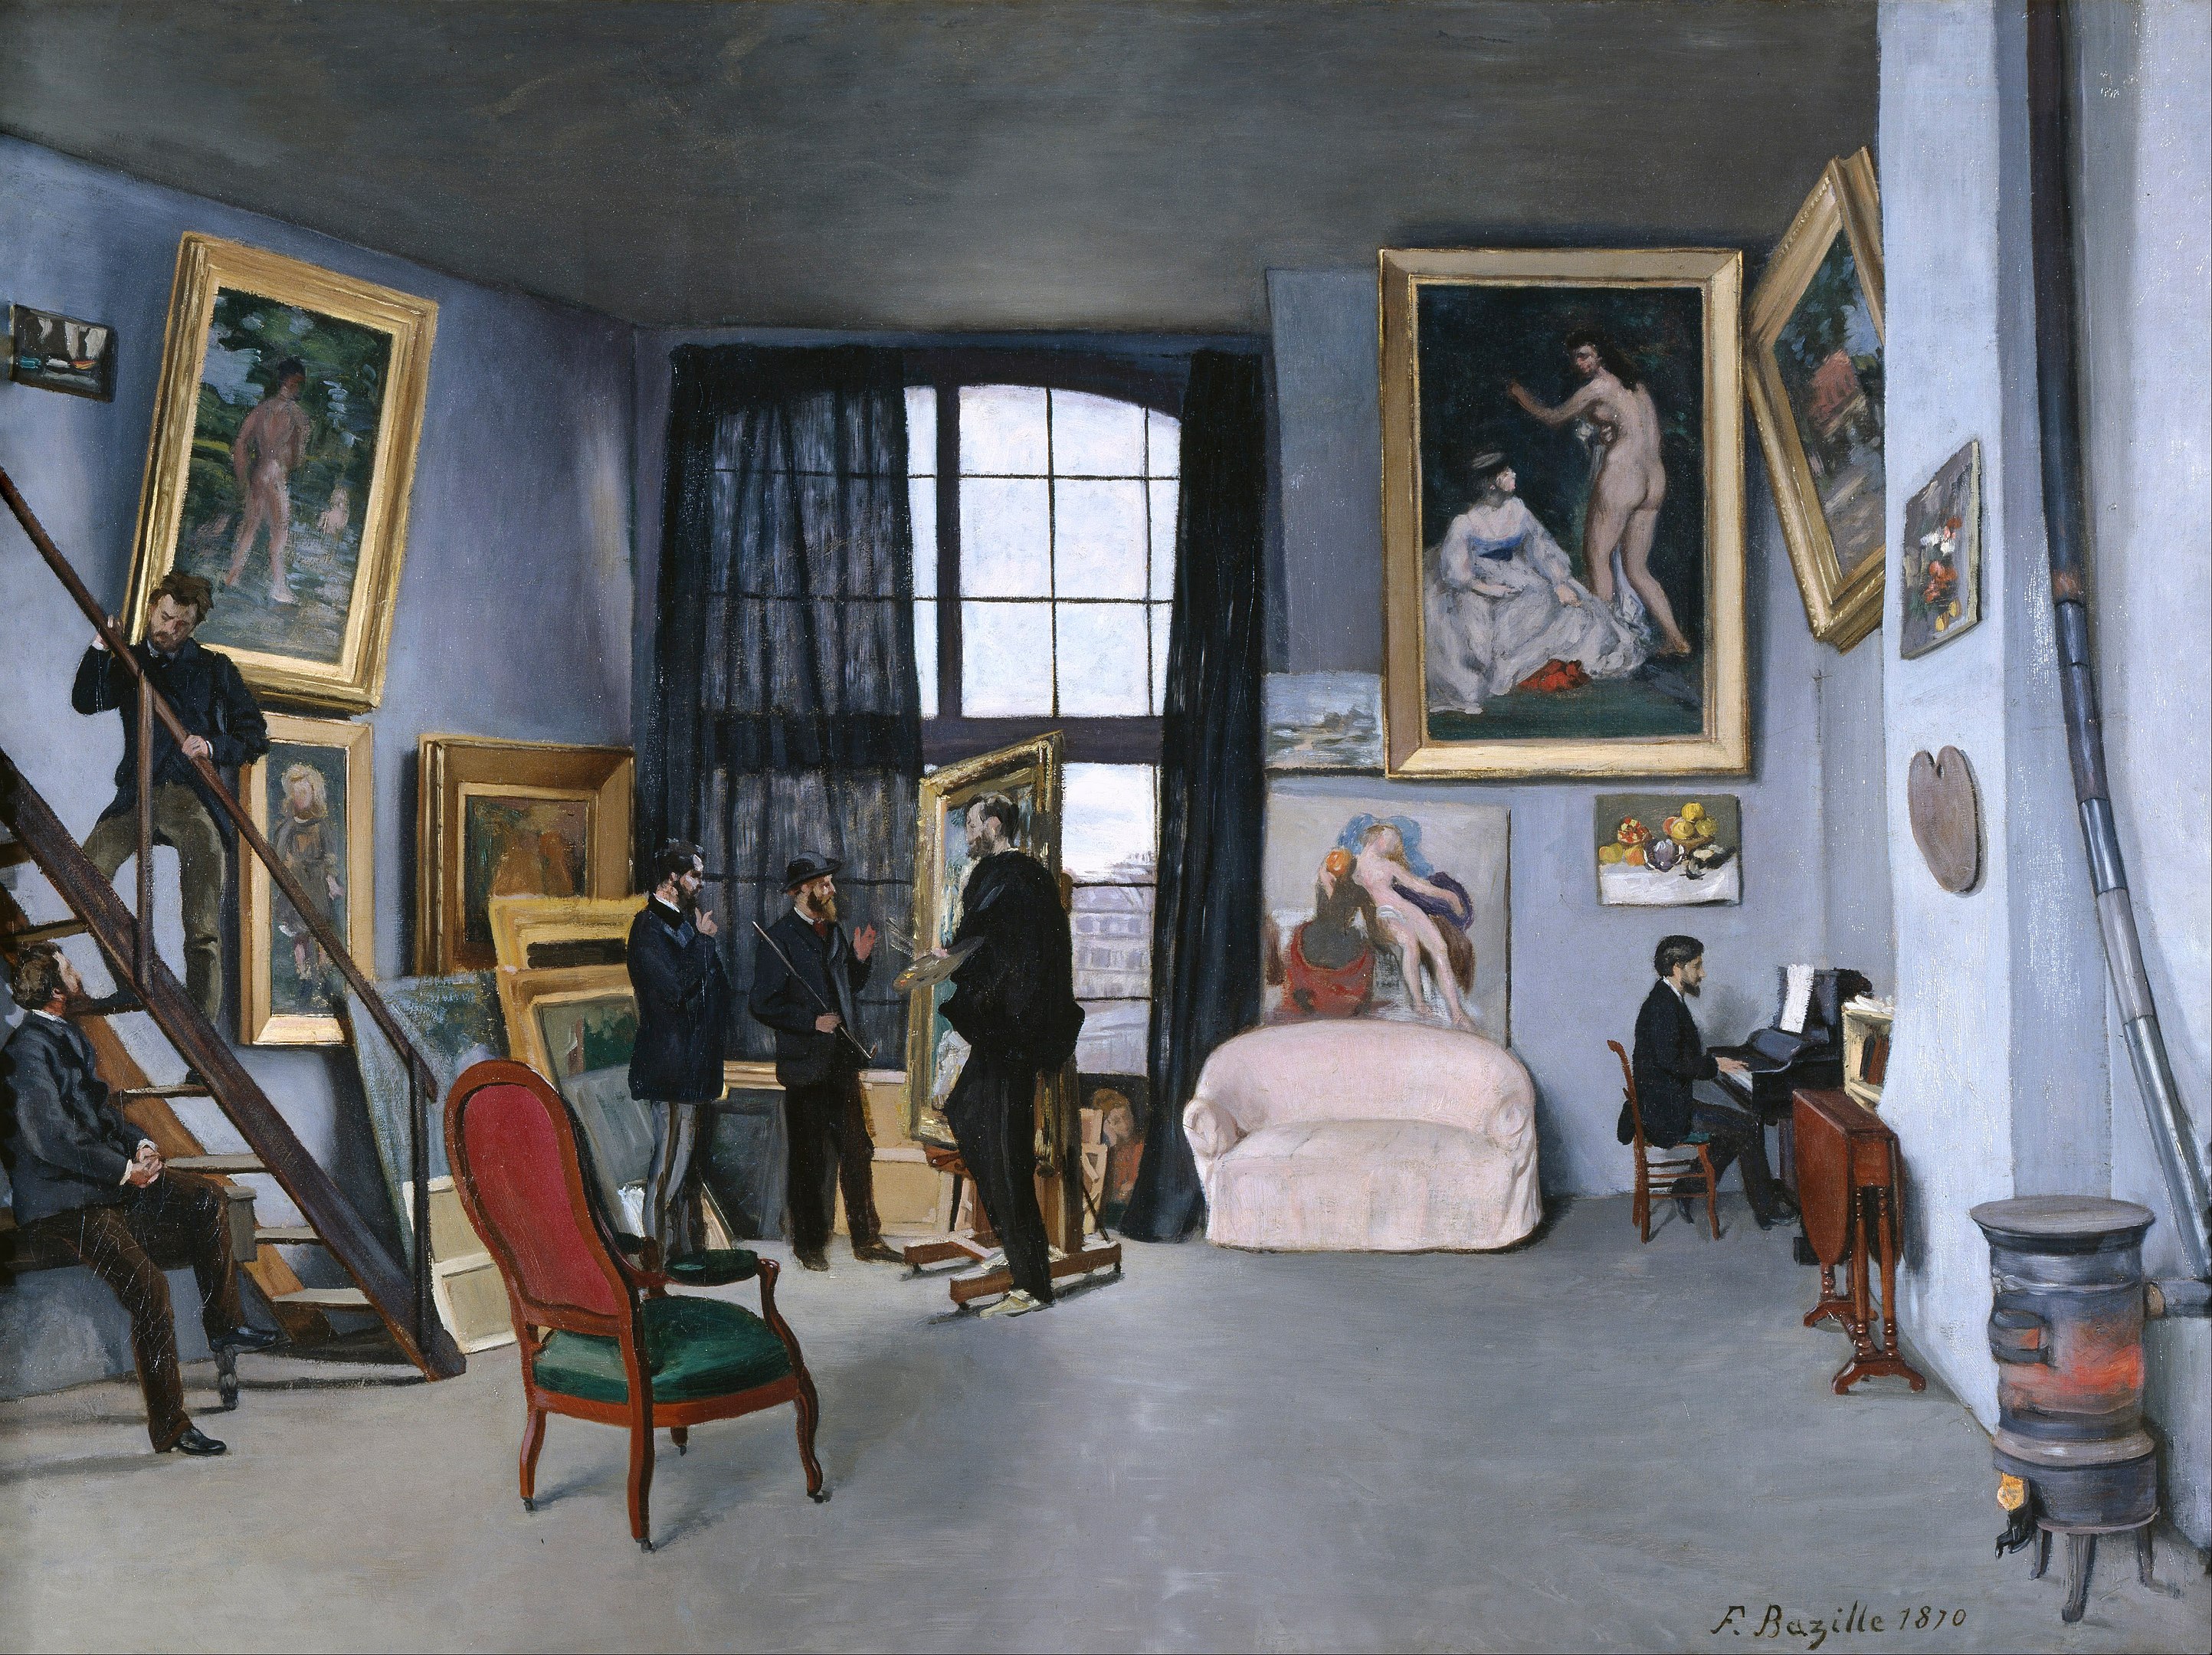 Le studio de Bazille by Frédéric Bazille - 1870 - 98 x 128 cm Musée d'Orsay